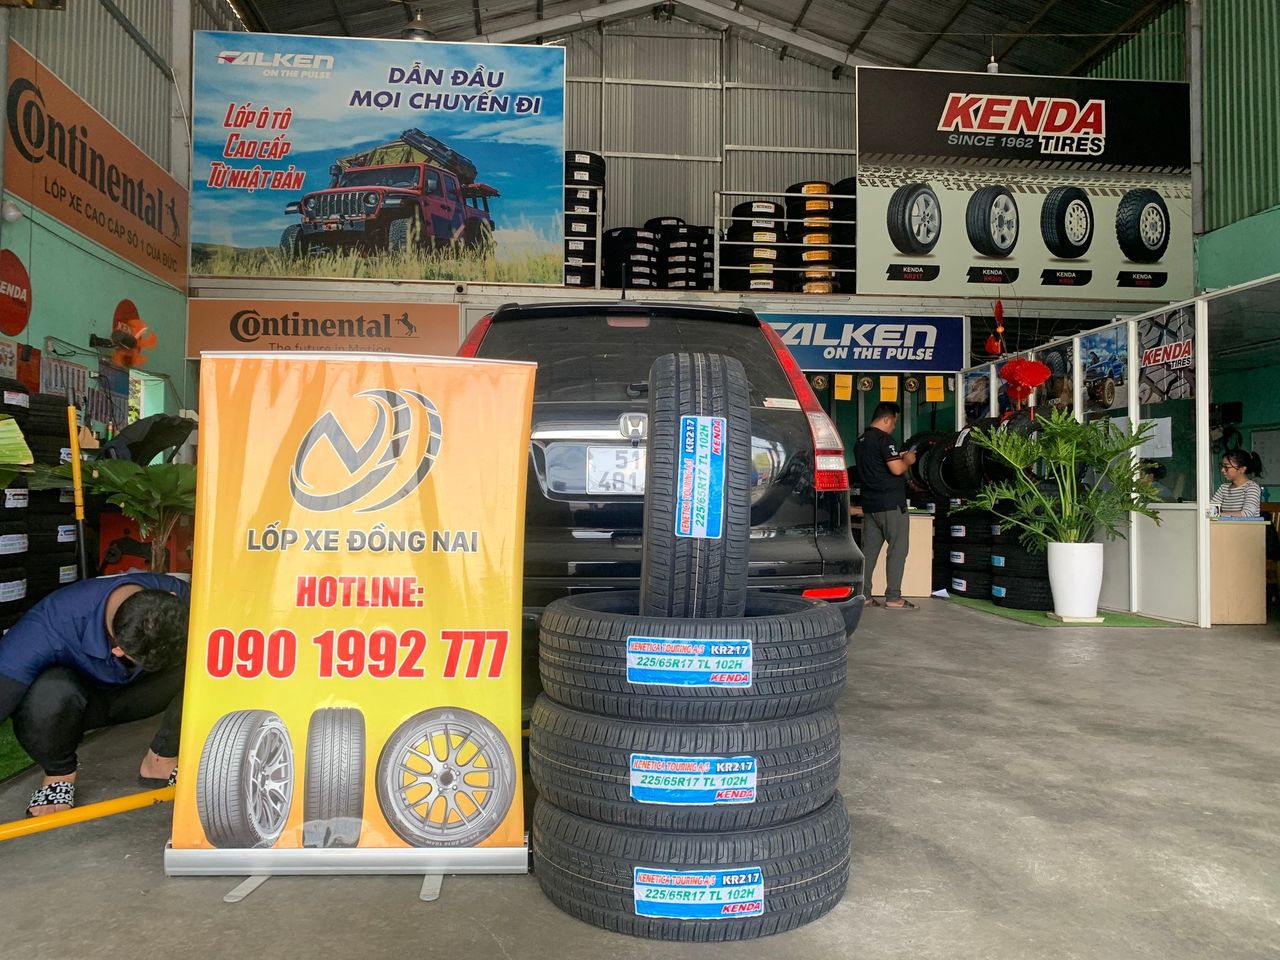 TƯ VẤN : Thay lốp xe Honda CRV ở Biên Hoà, Đồng Nai.